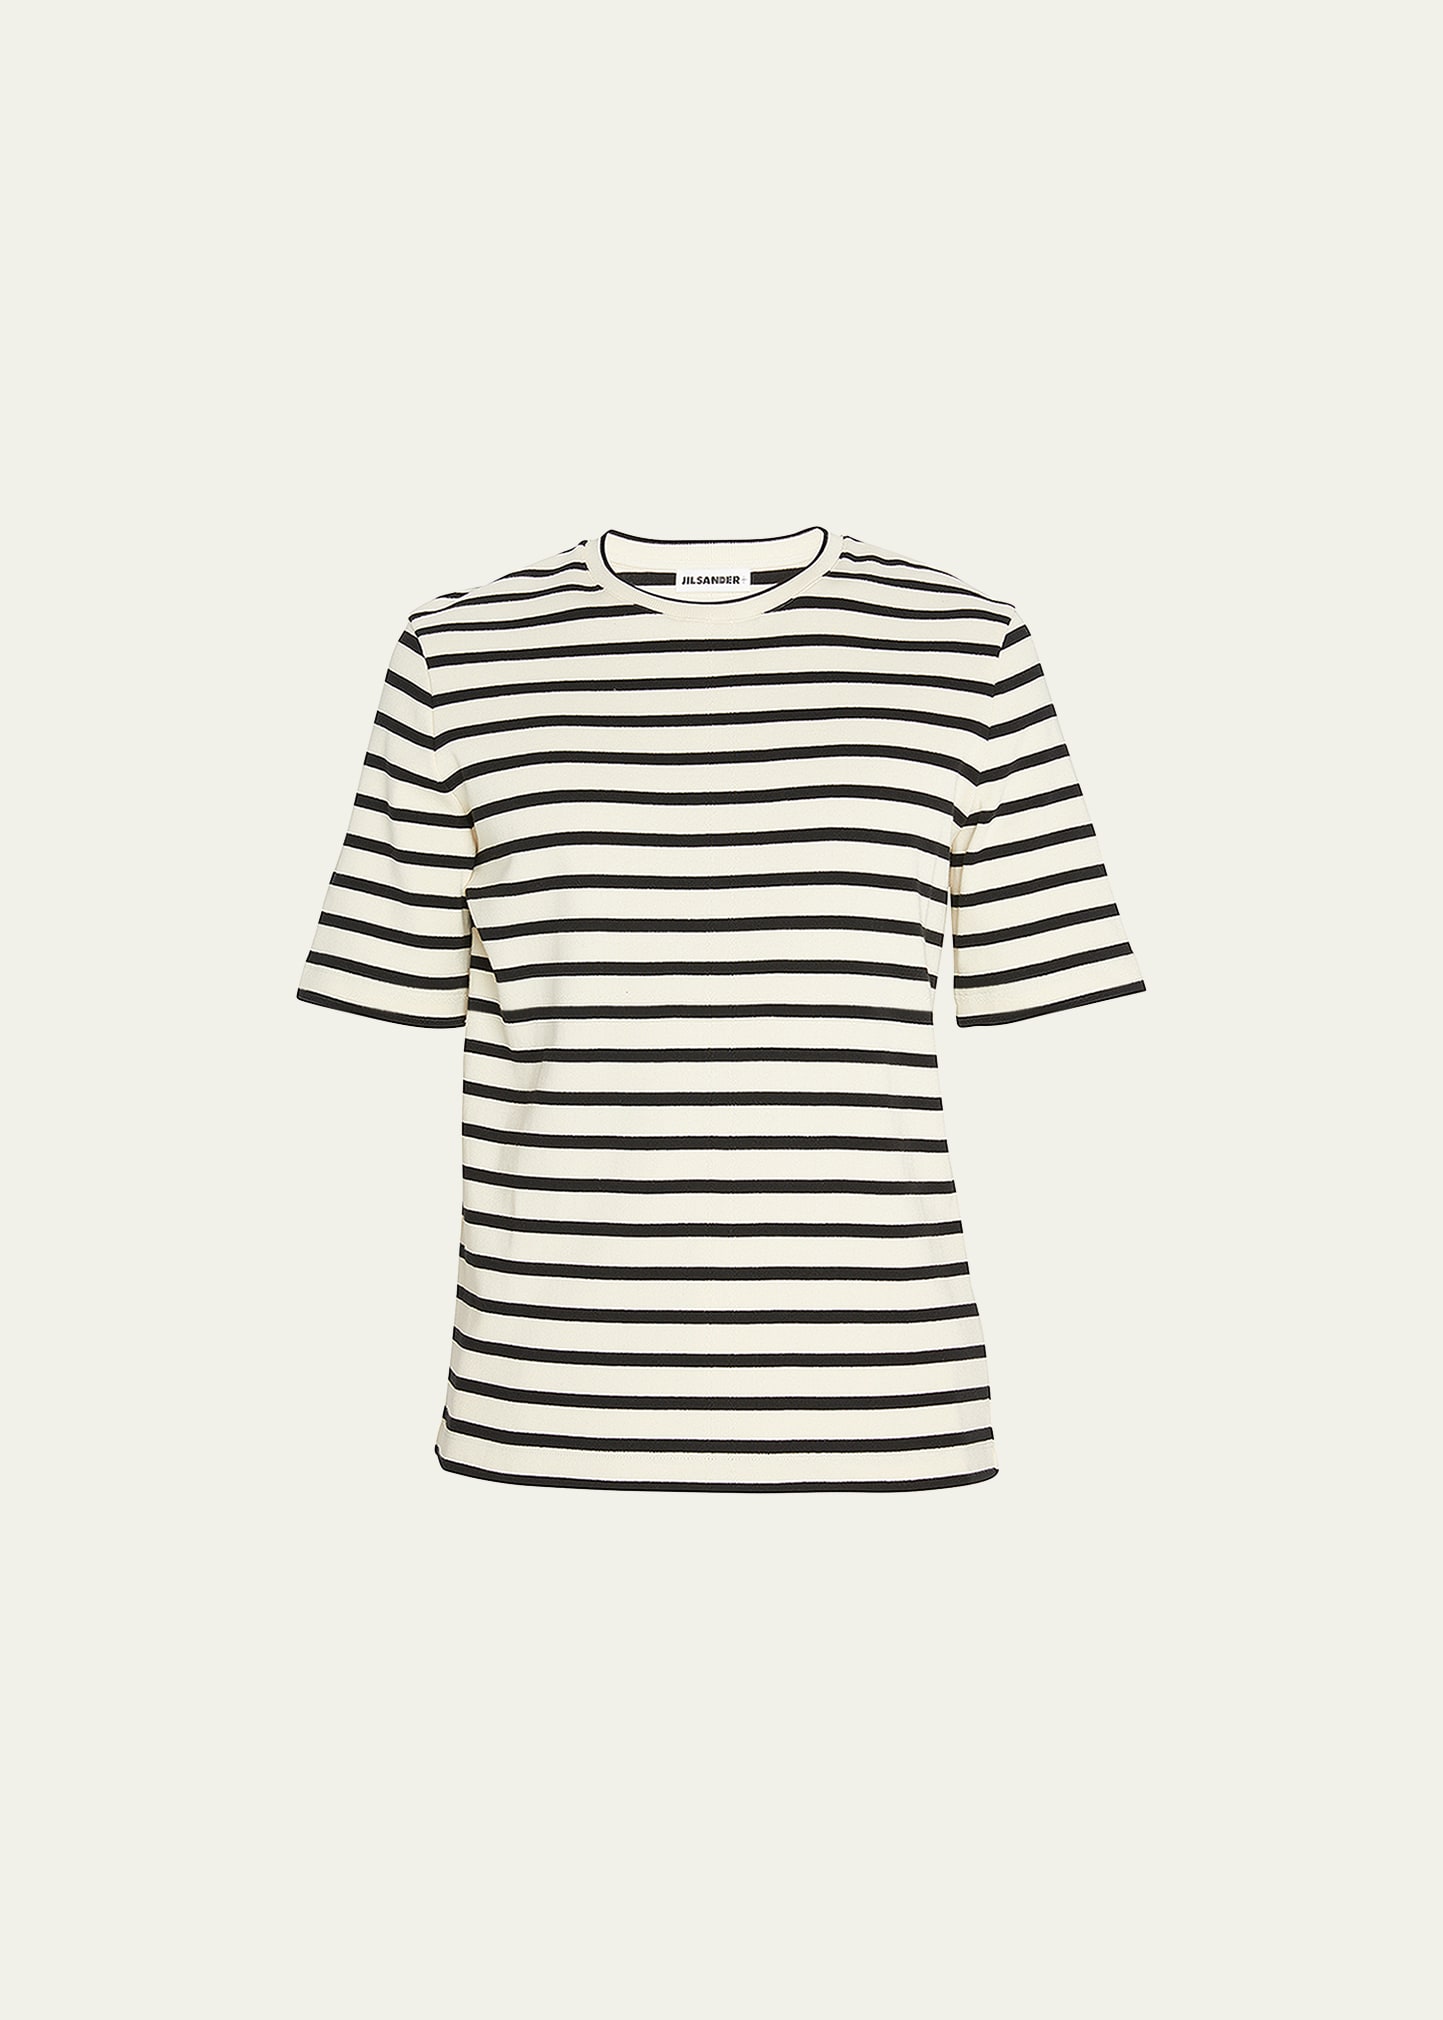 Shop Jil Sander Men's Striped Crew T-shirt In Open Grey